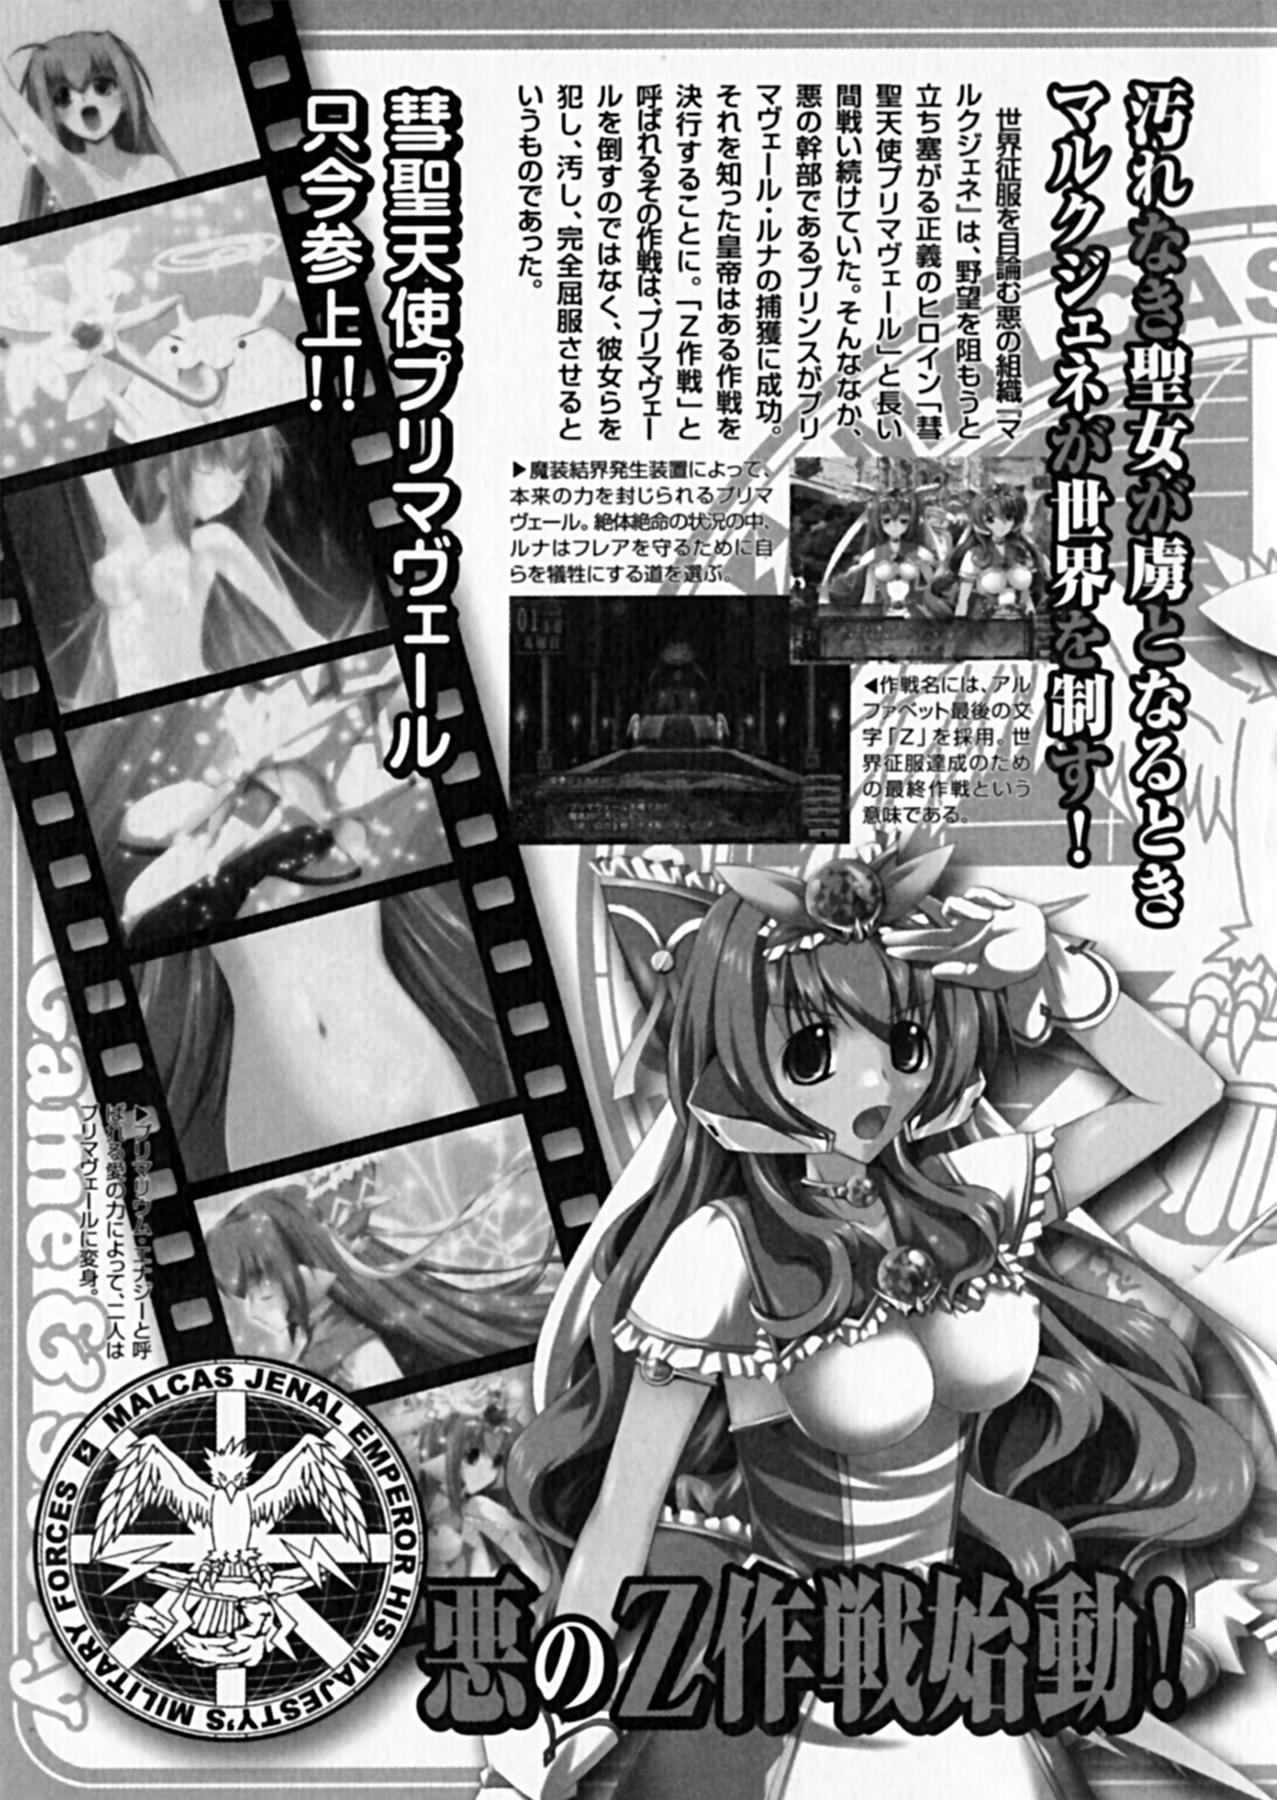 Suisei Tenshi Prima Veil Zwei Anthology Comic EX 21